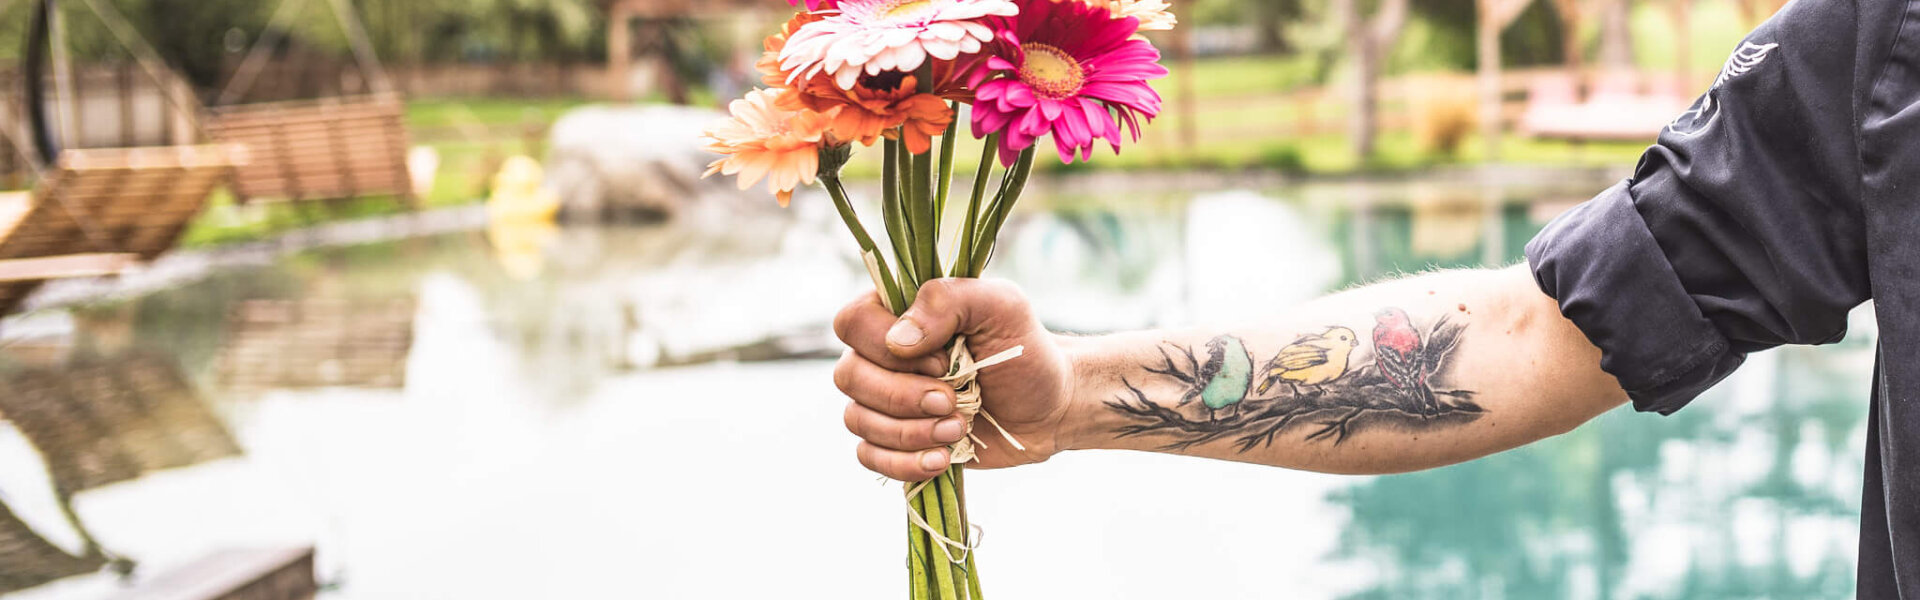 Tätovierte Hand hält einen bunten Blumenstrauß